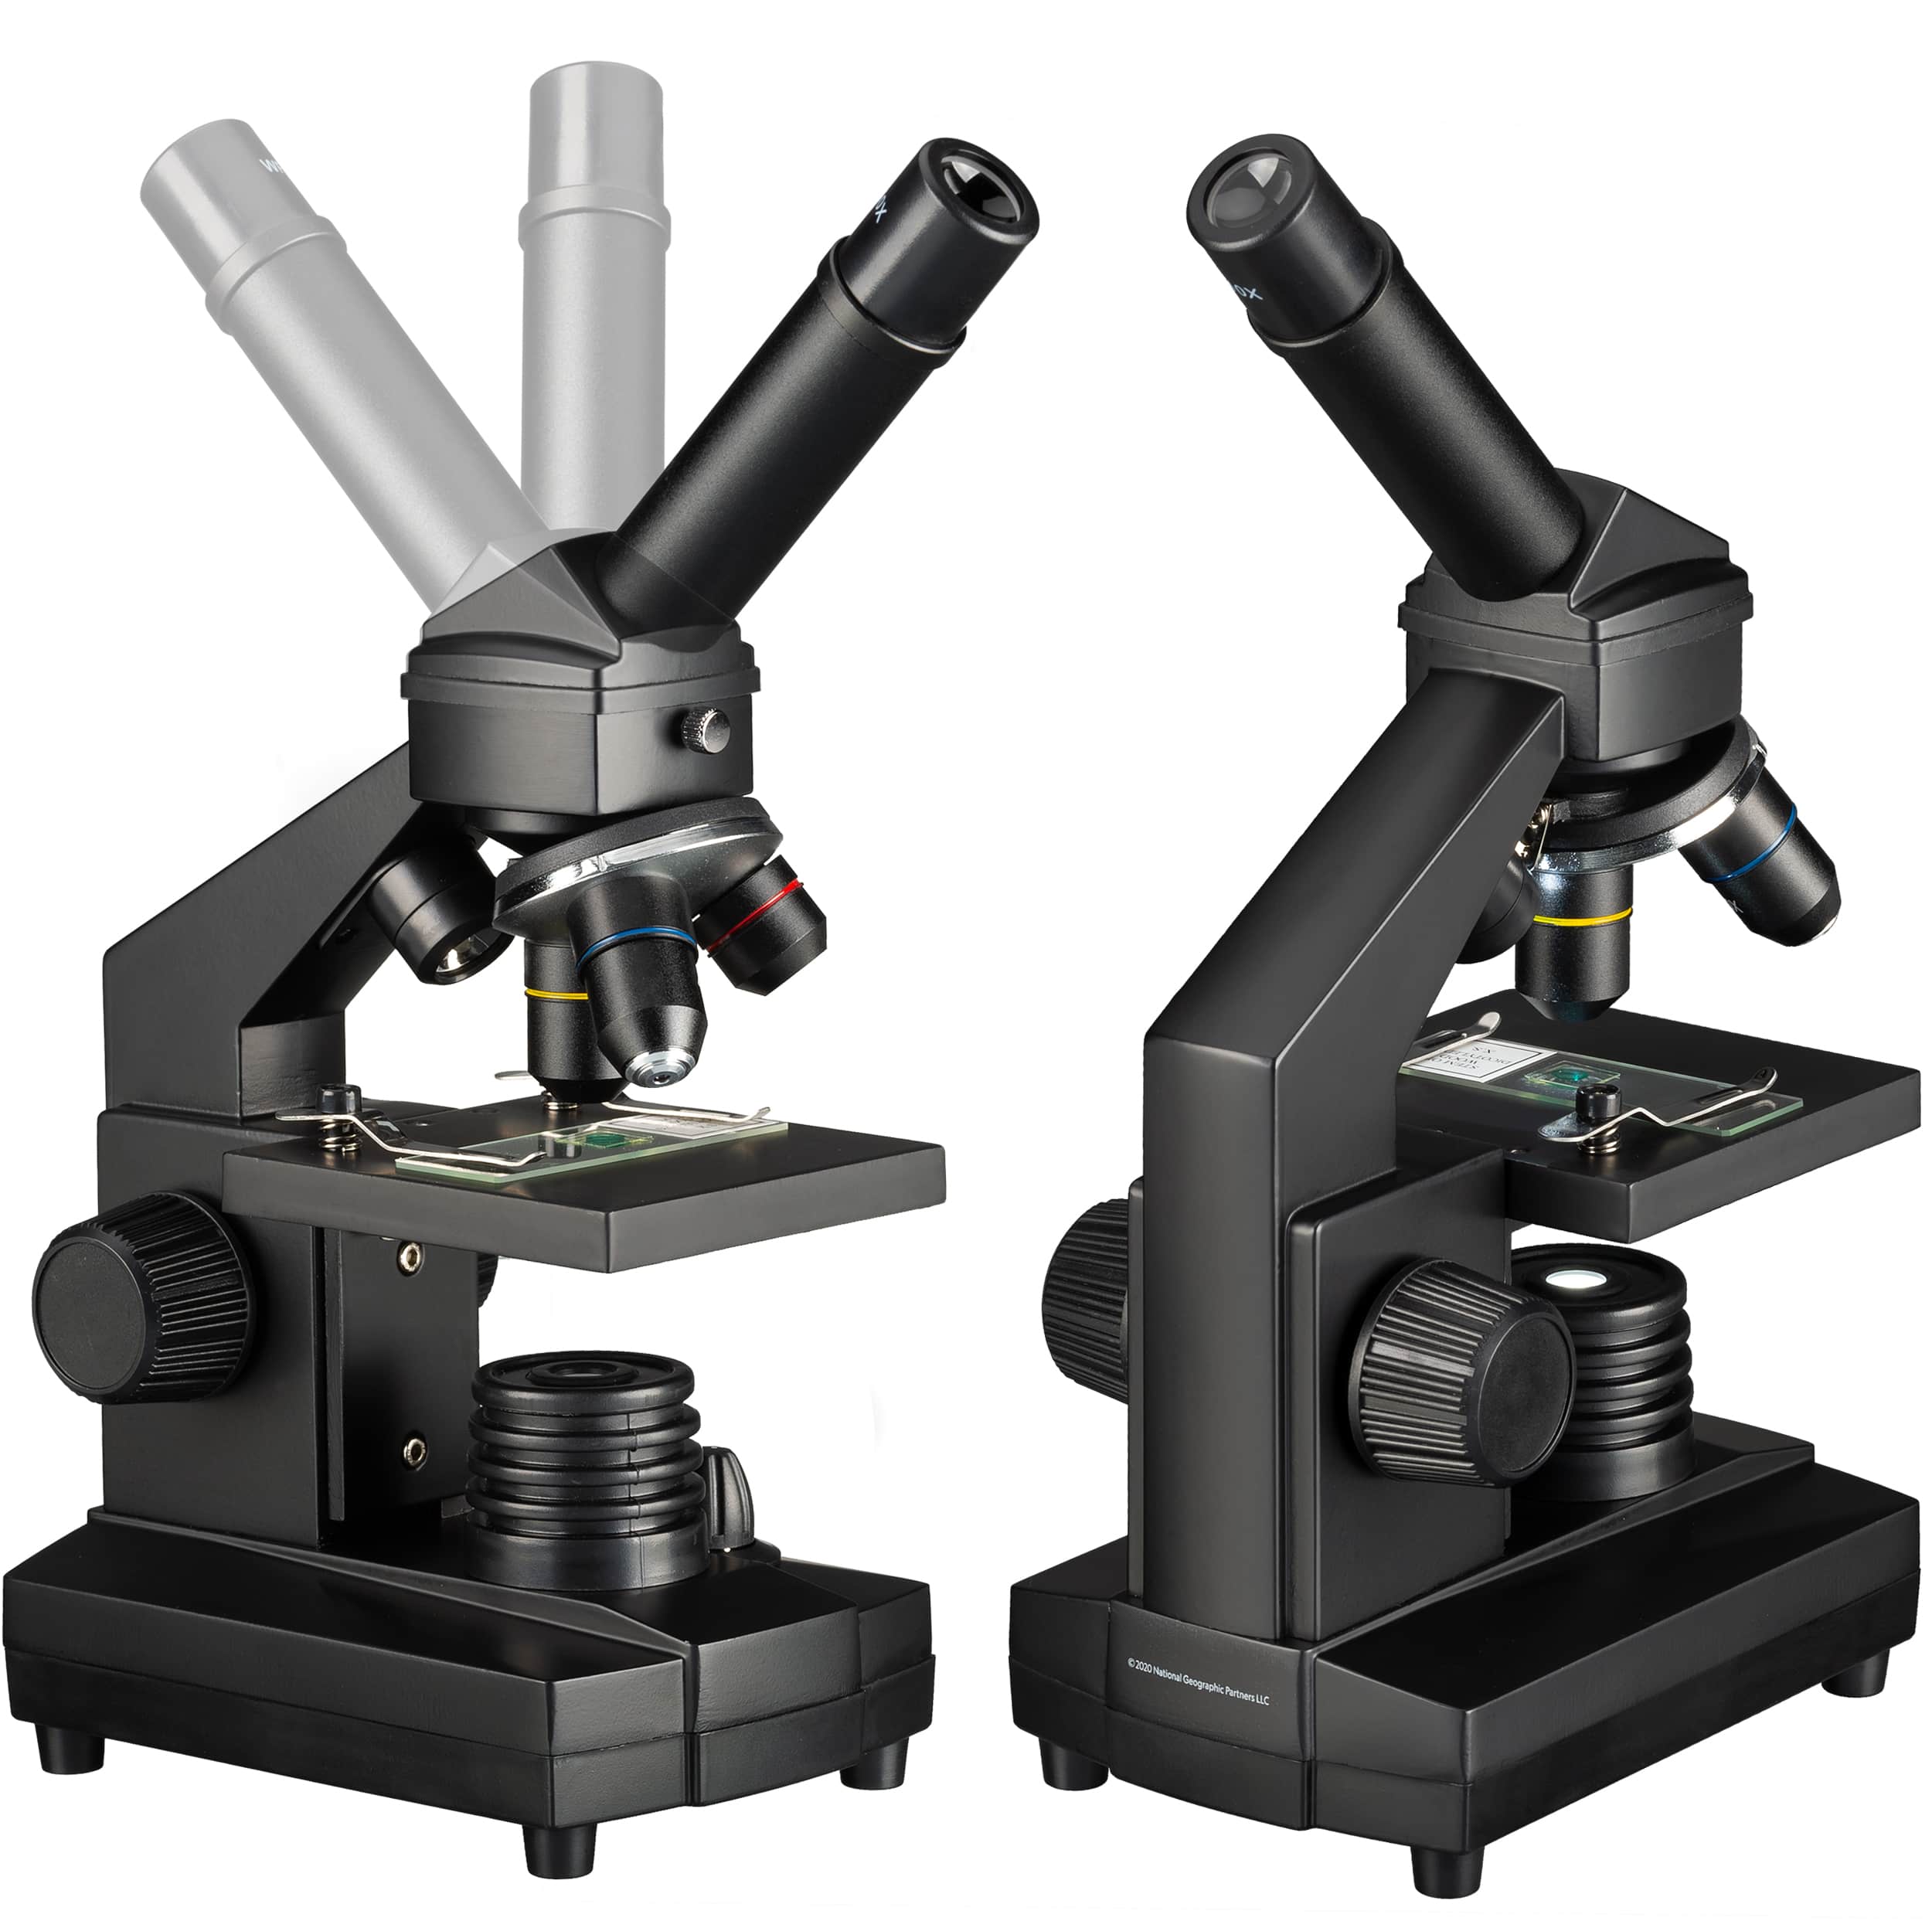   Il microscopio NATIONAL GEOGRAPHIC 40x-1024x offre un'ampia gamma di accessori per i principianti: valigetta da trasporto, oculare HD per il collegamento a un PC, ampio set per la preparazione e una selezione di preparati permanenti - basta aprirla e iniziare  